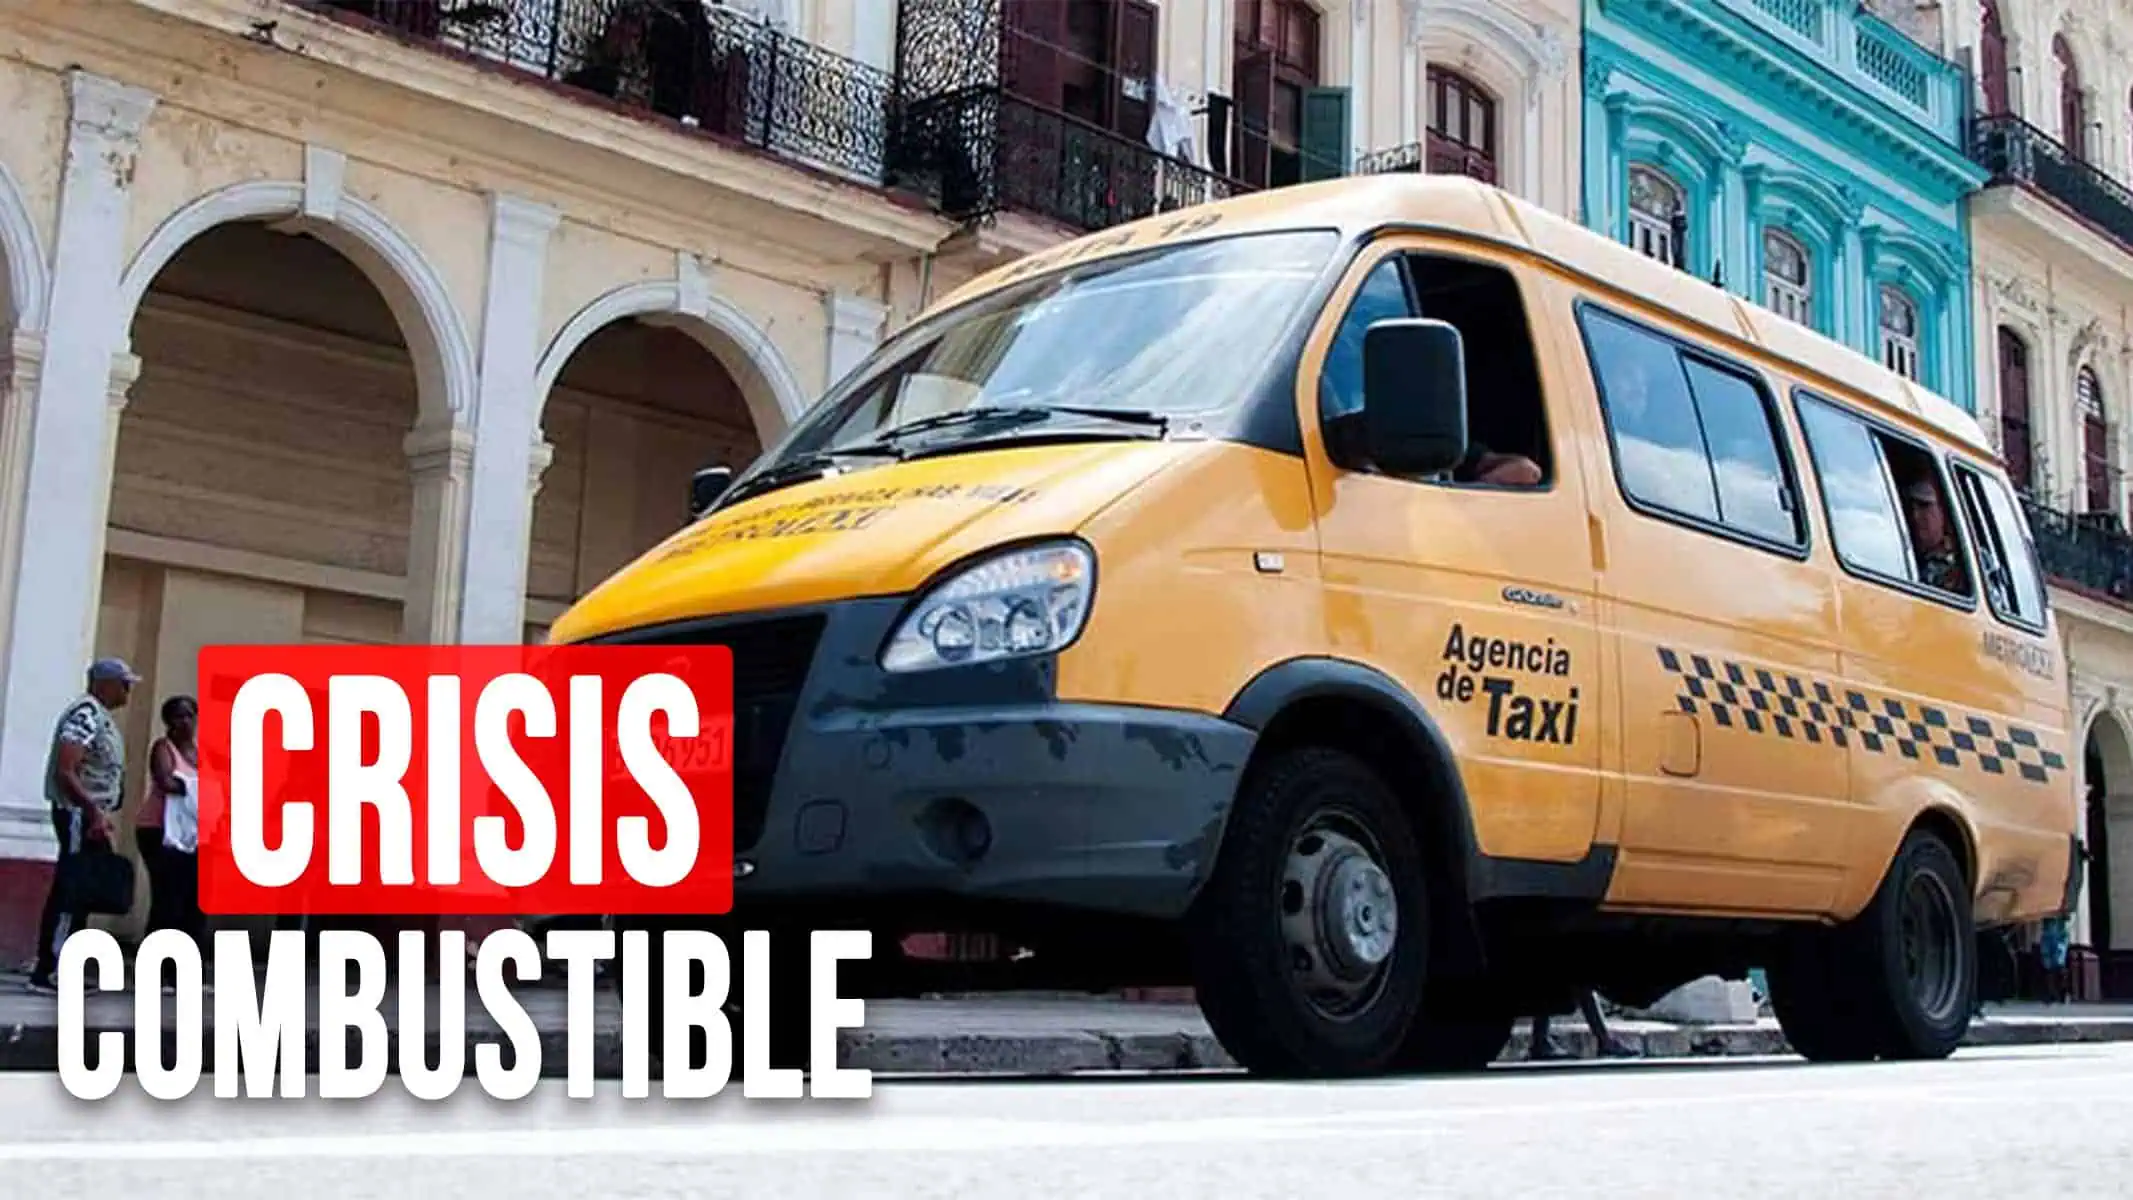 Crisis de Combustible Paraliza el Servicio de Taxis Gazzelle en La Habana